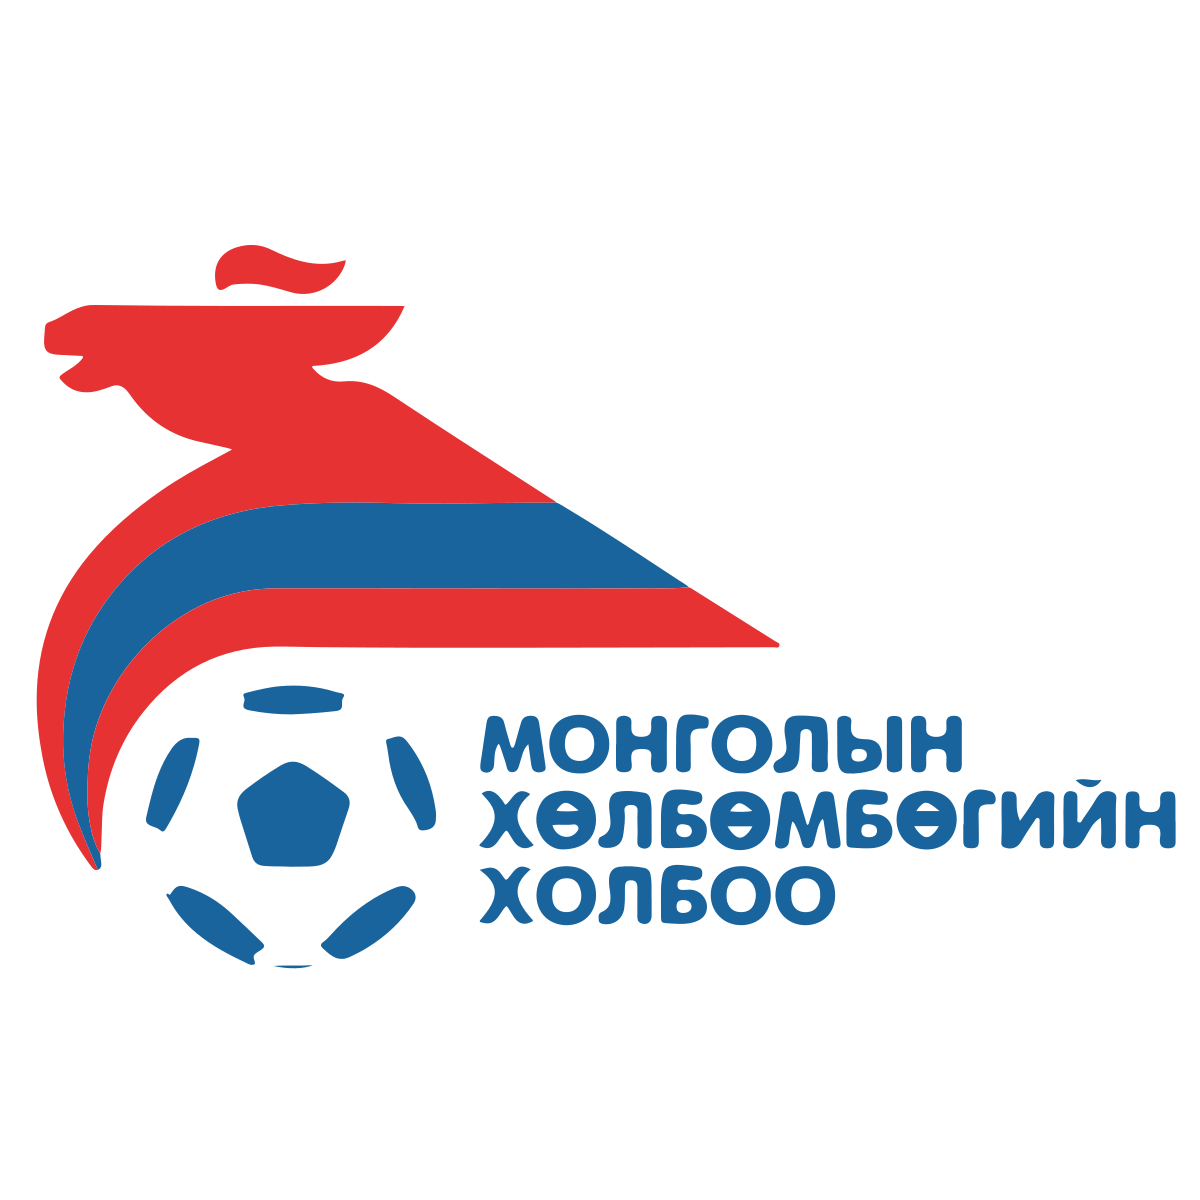 Mongolia U-23 logo